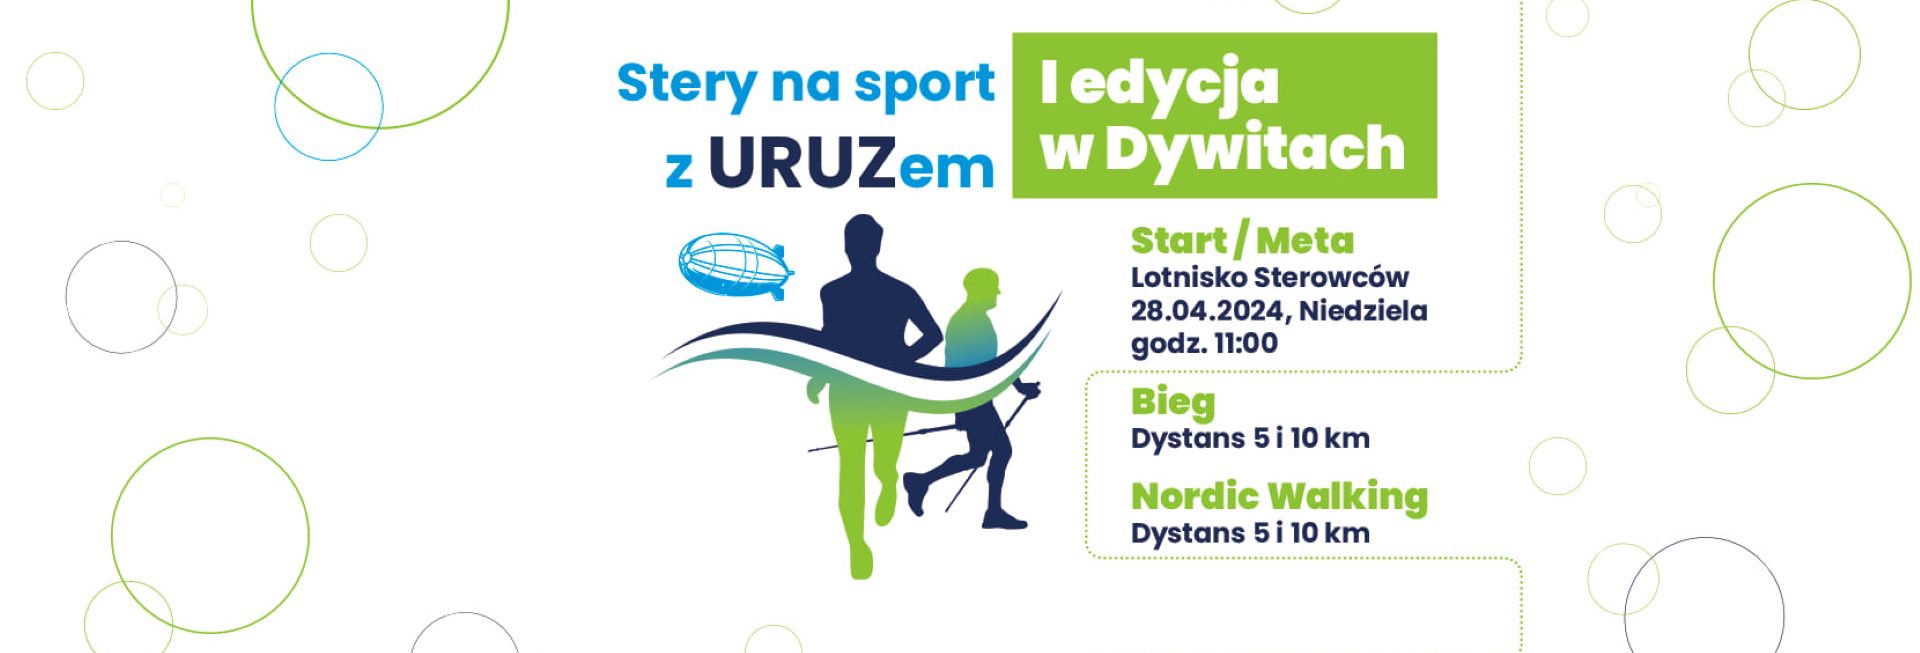 Plakat zapraszający w niedzielę 28 kwietnia 2024 r. do Dywit na 1. edycję Biegu & Nordic Walking "Stery na sport z Uruzem" Dywity 2024.